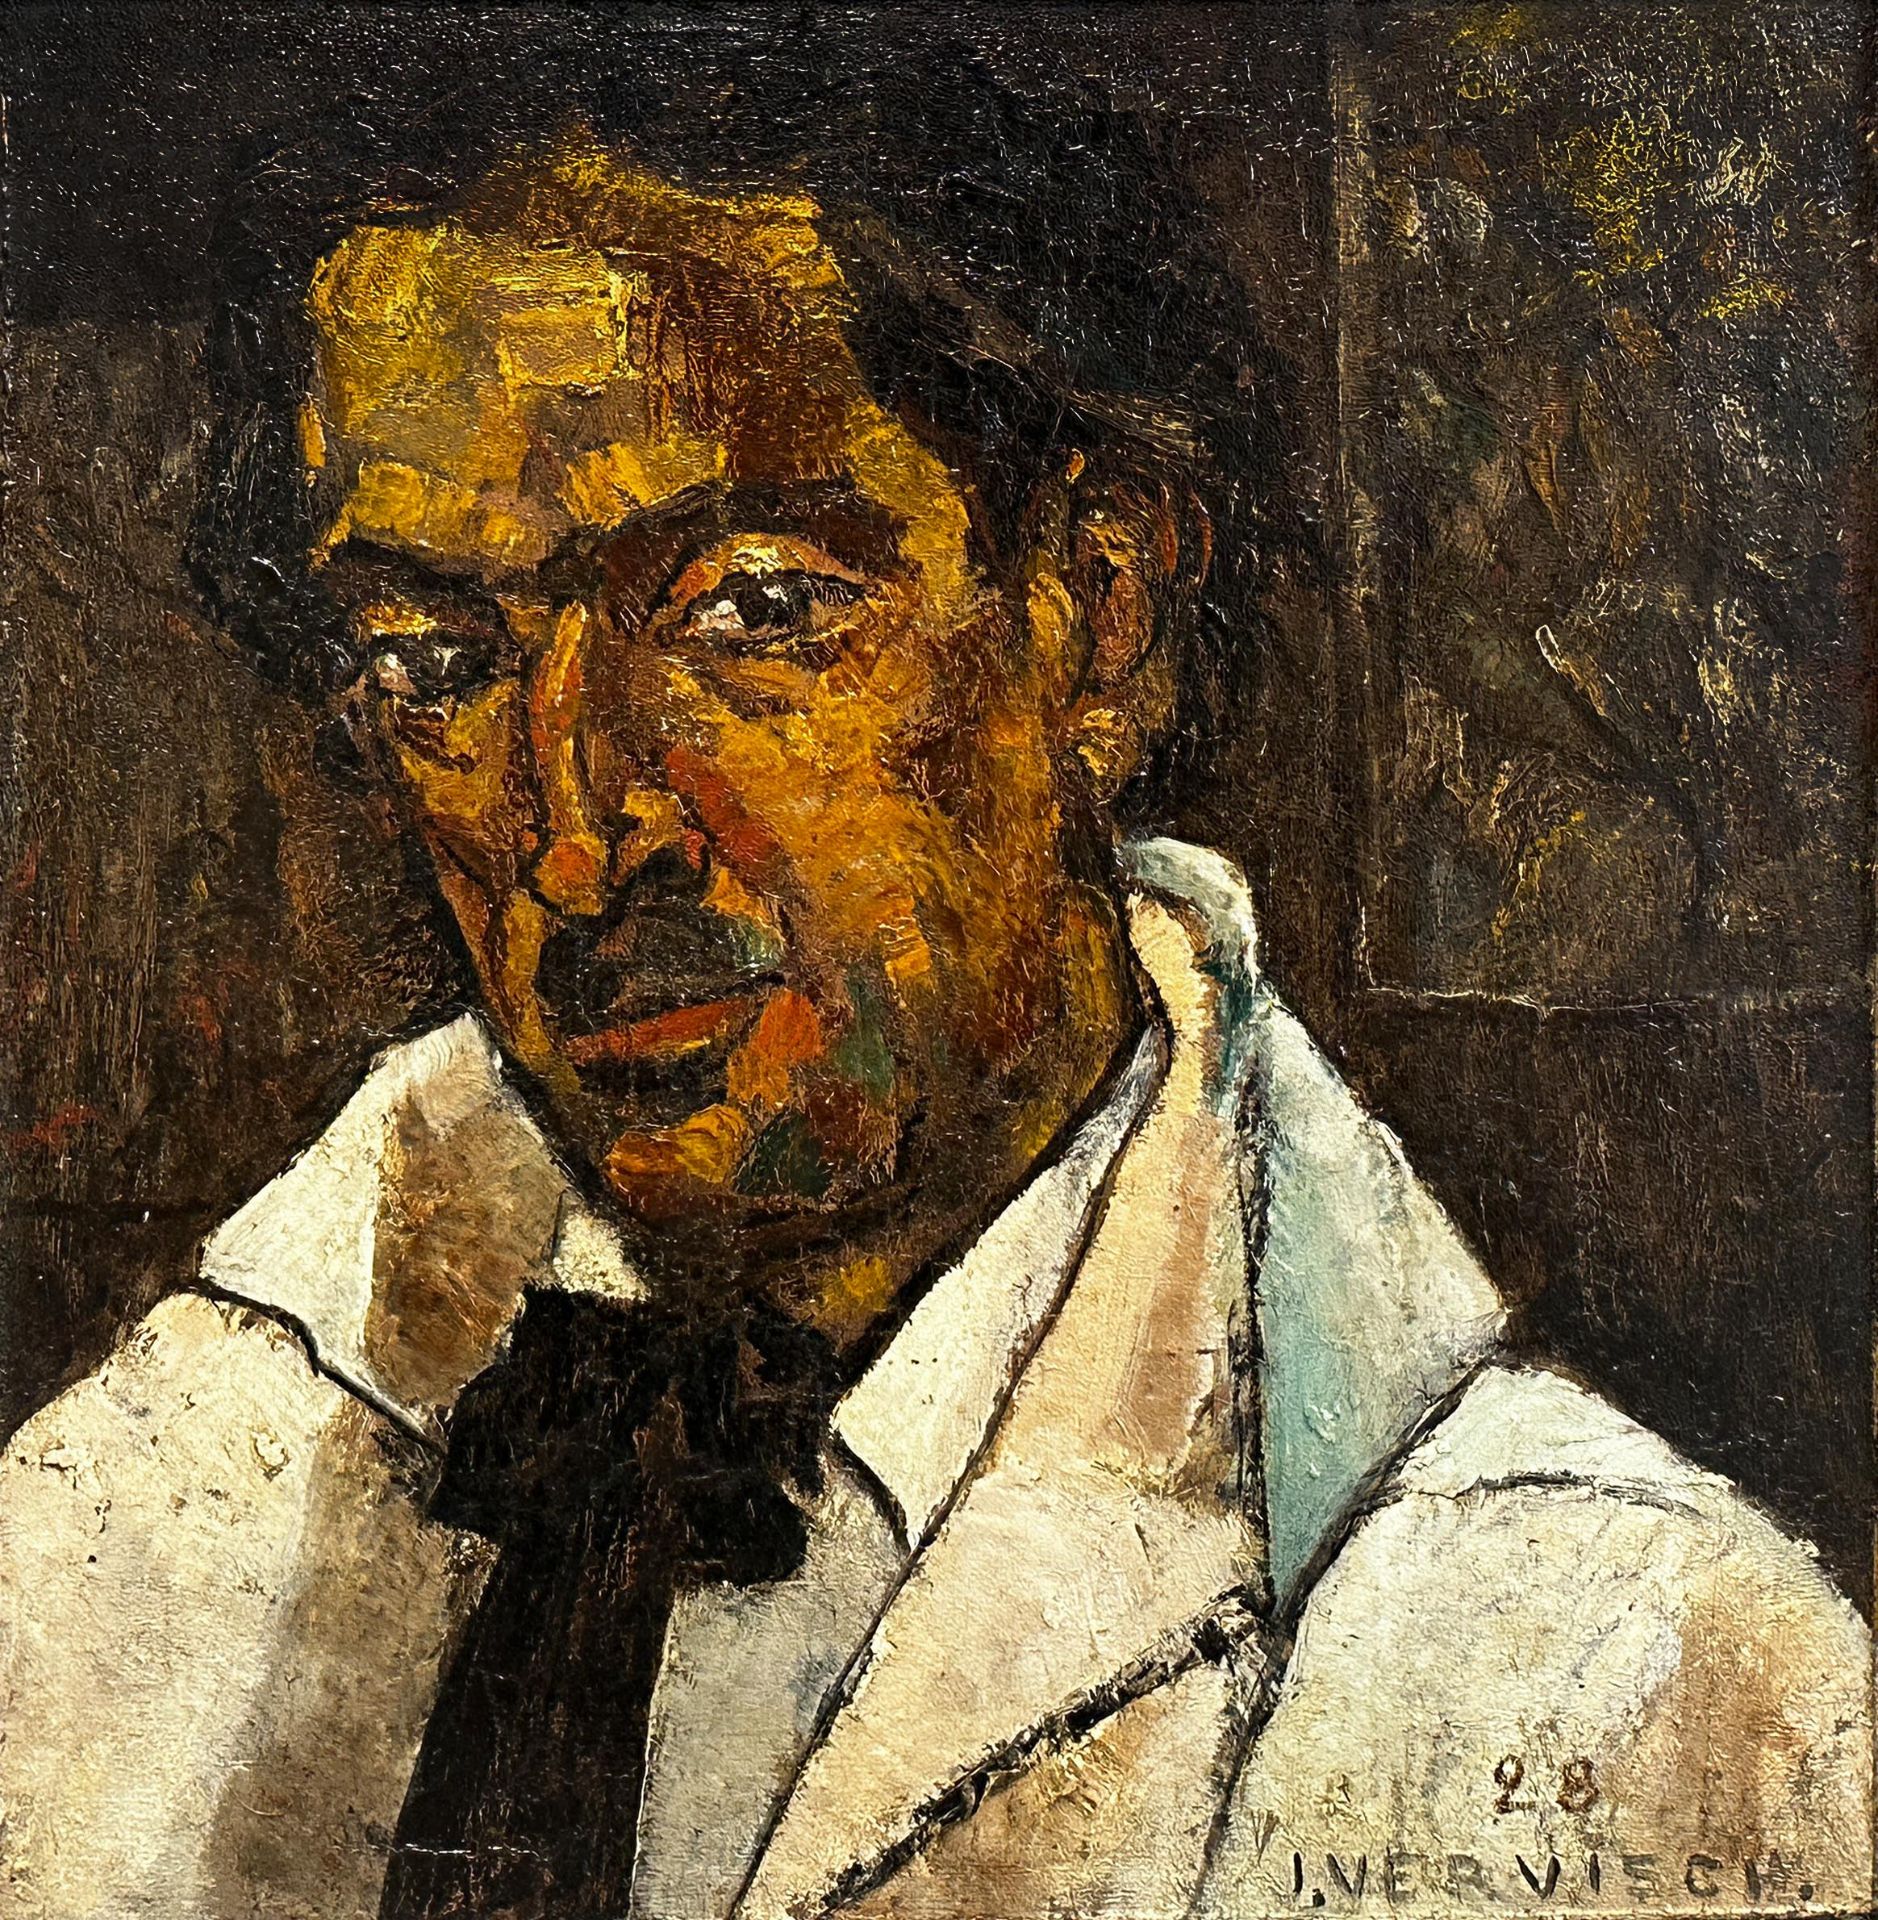 Jean VERVISCH (1896 - 1977). "Self-portrait". Dated 1928.